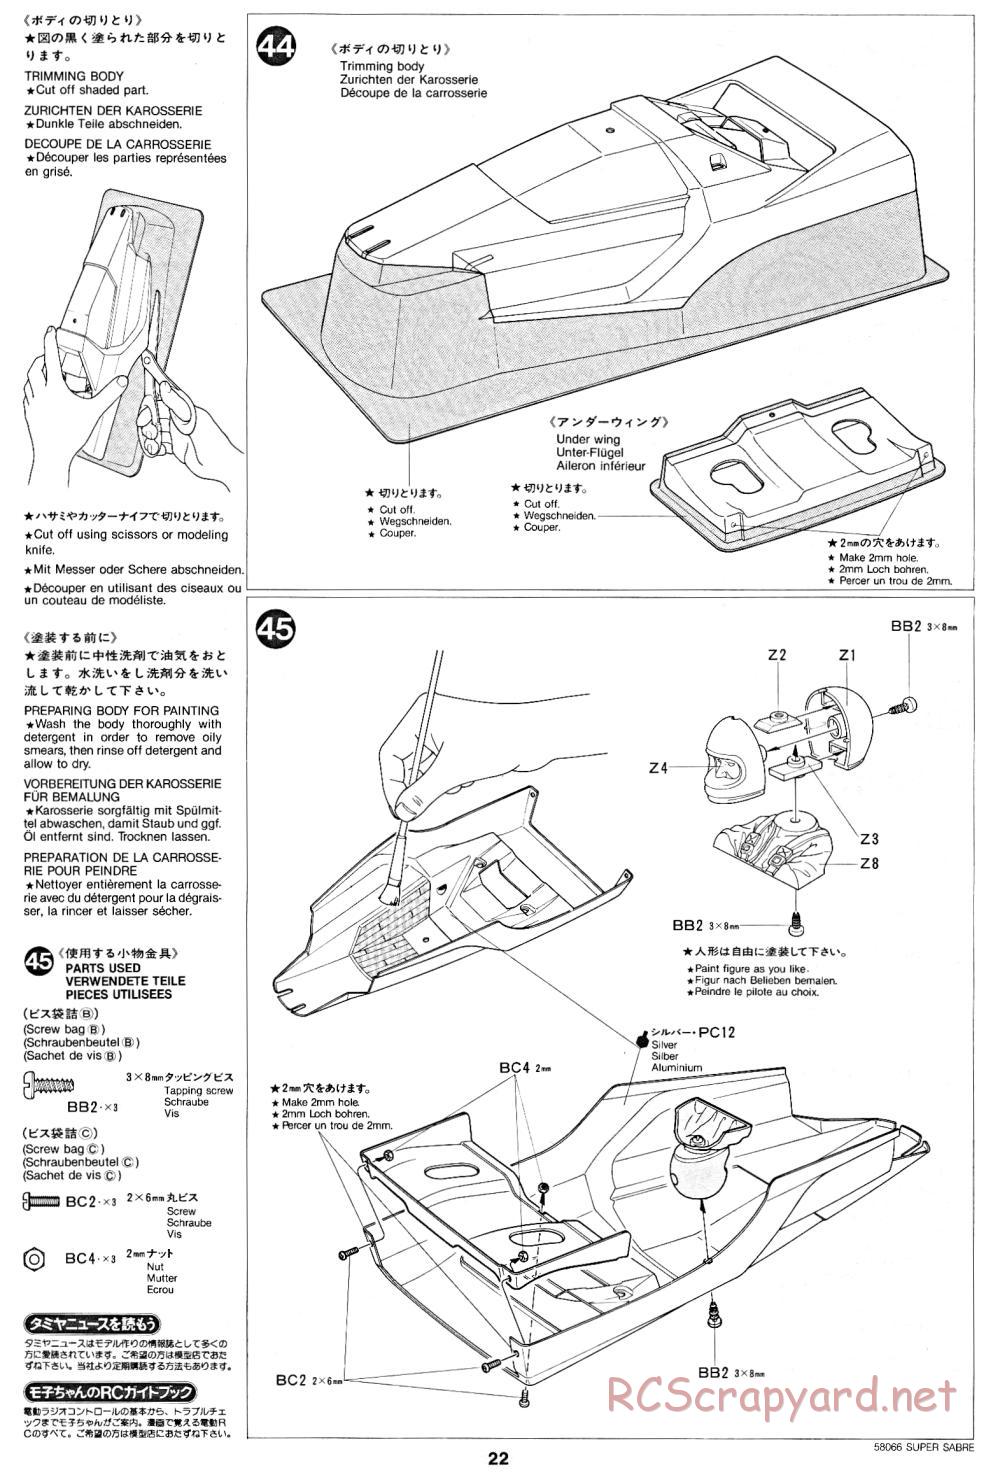 Tamiya - Super Sabre - 58066 - Manual - Page 22